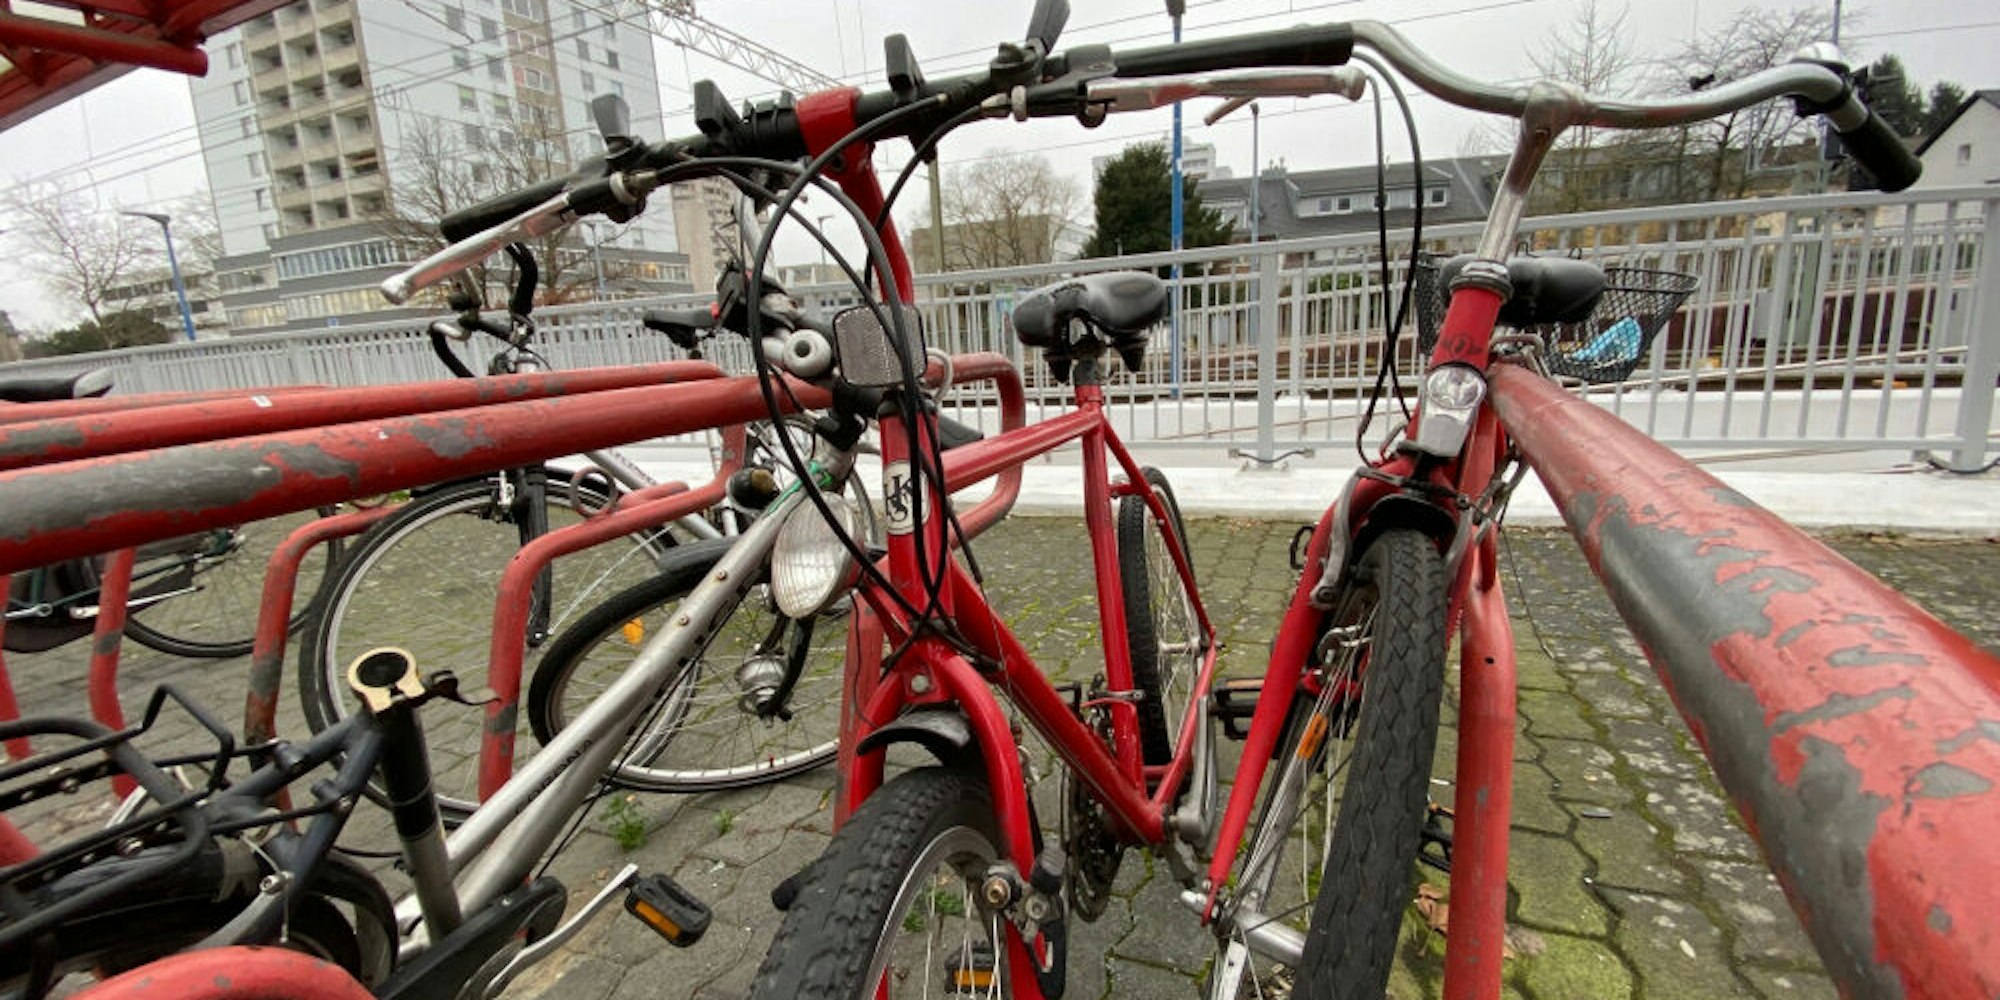 Künftig könnte es in Brühl Fahrräder und E-Bikes zur Ausleihe geben. Diese würden insbesondere an Bahnhöfen platziert.